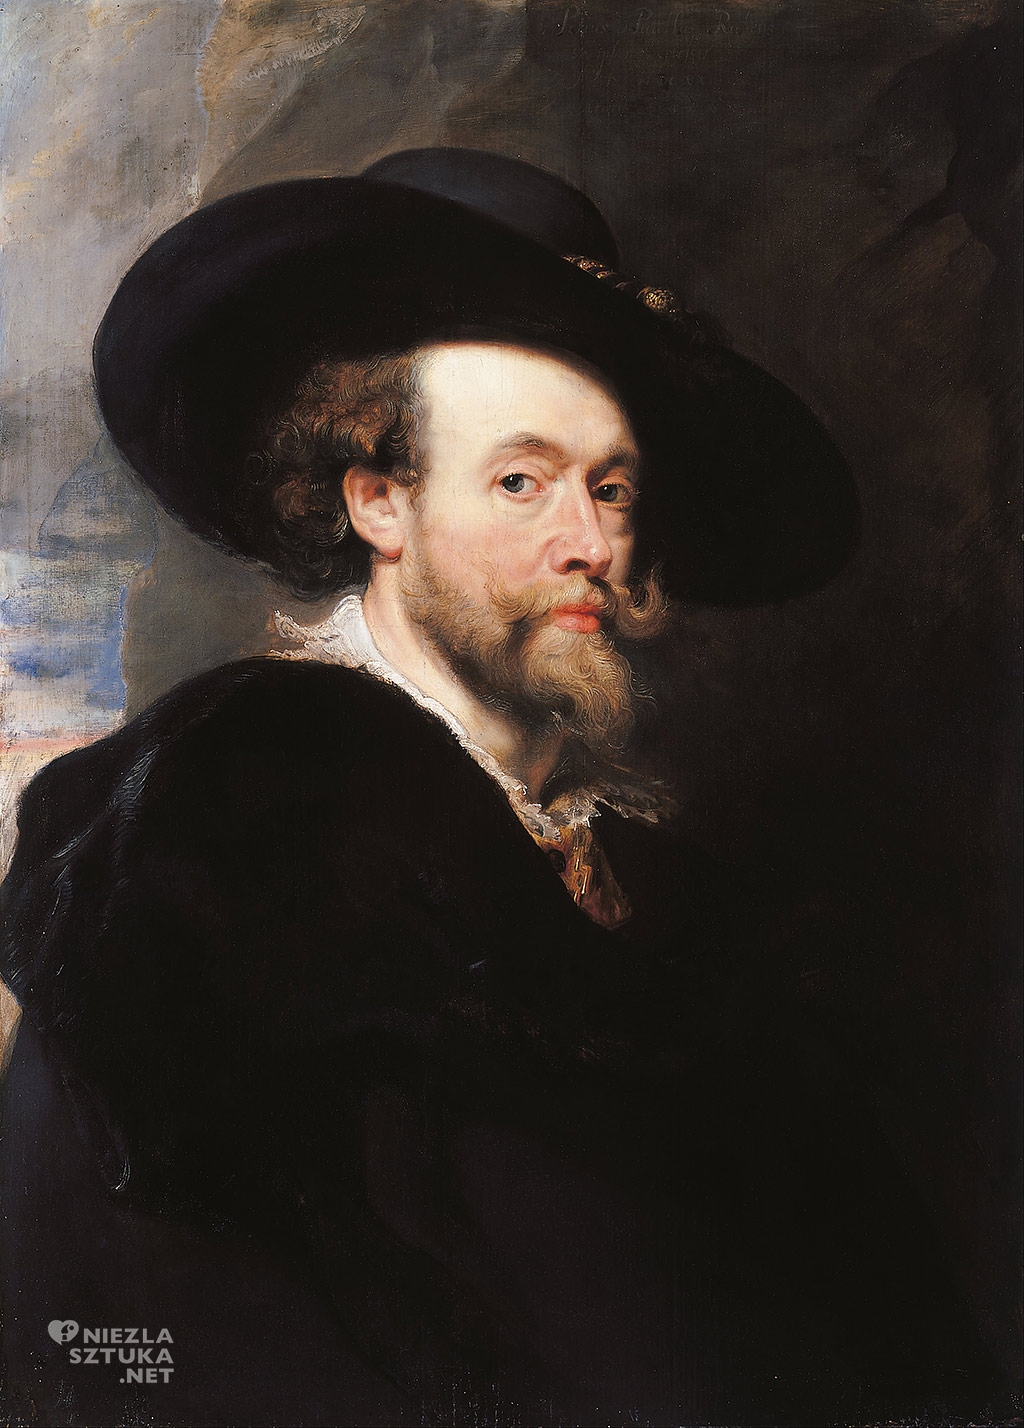 Peter Paul Rubens, Autoportret, Australia, Niezła sztuka